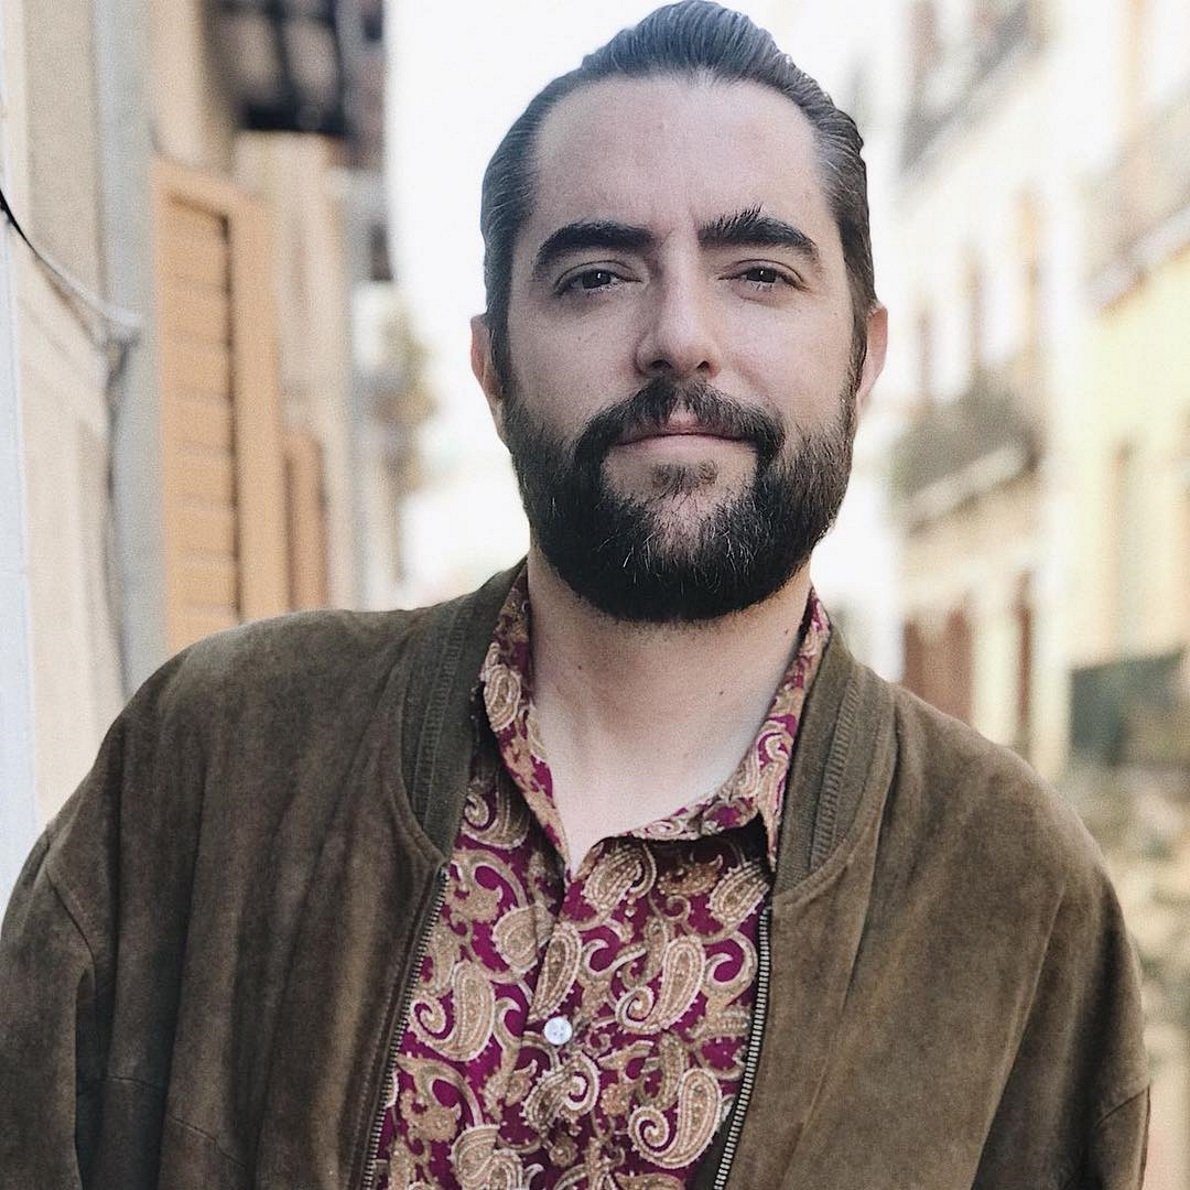 Dani Mateo defiende a Arturo Valls después de ser acusado de machista en los Goya